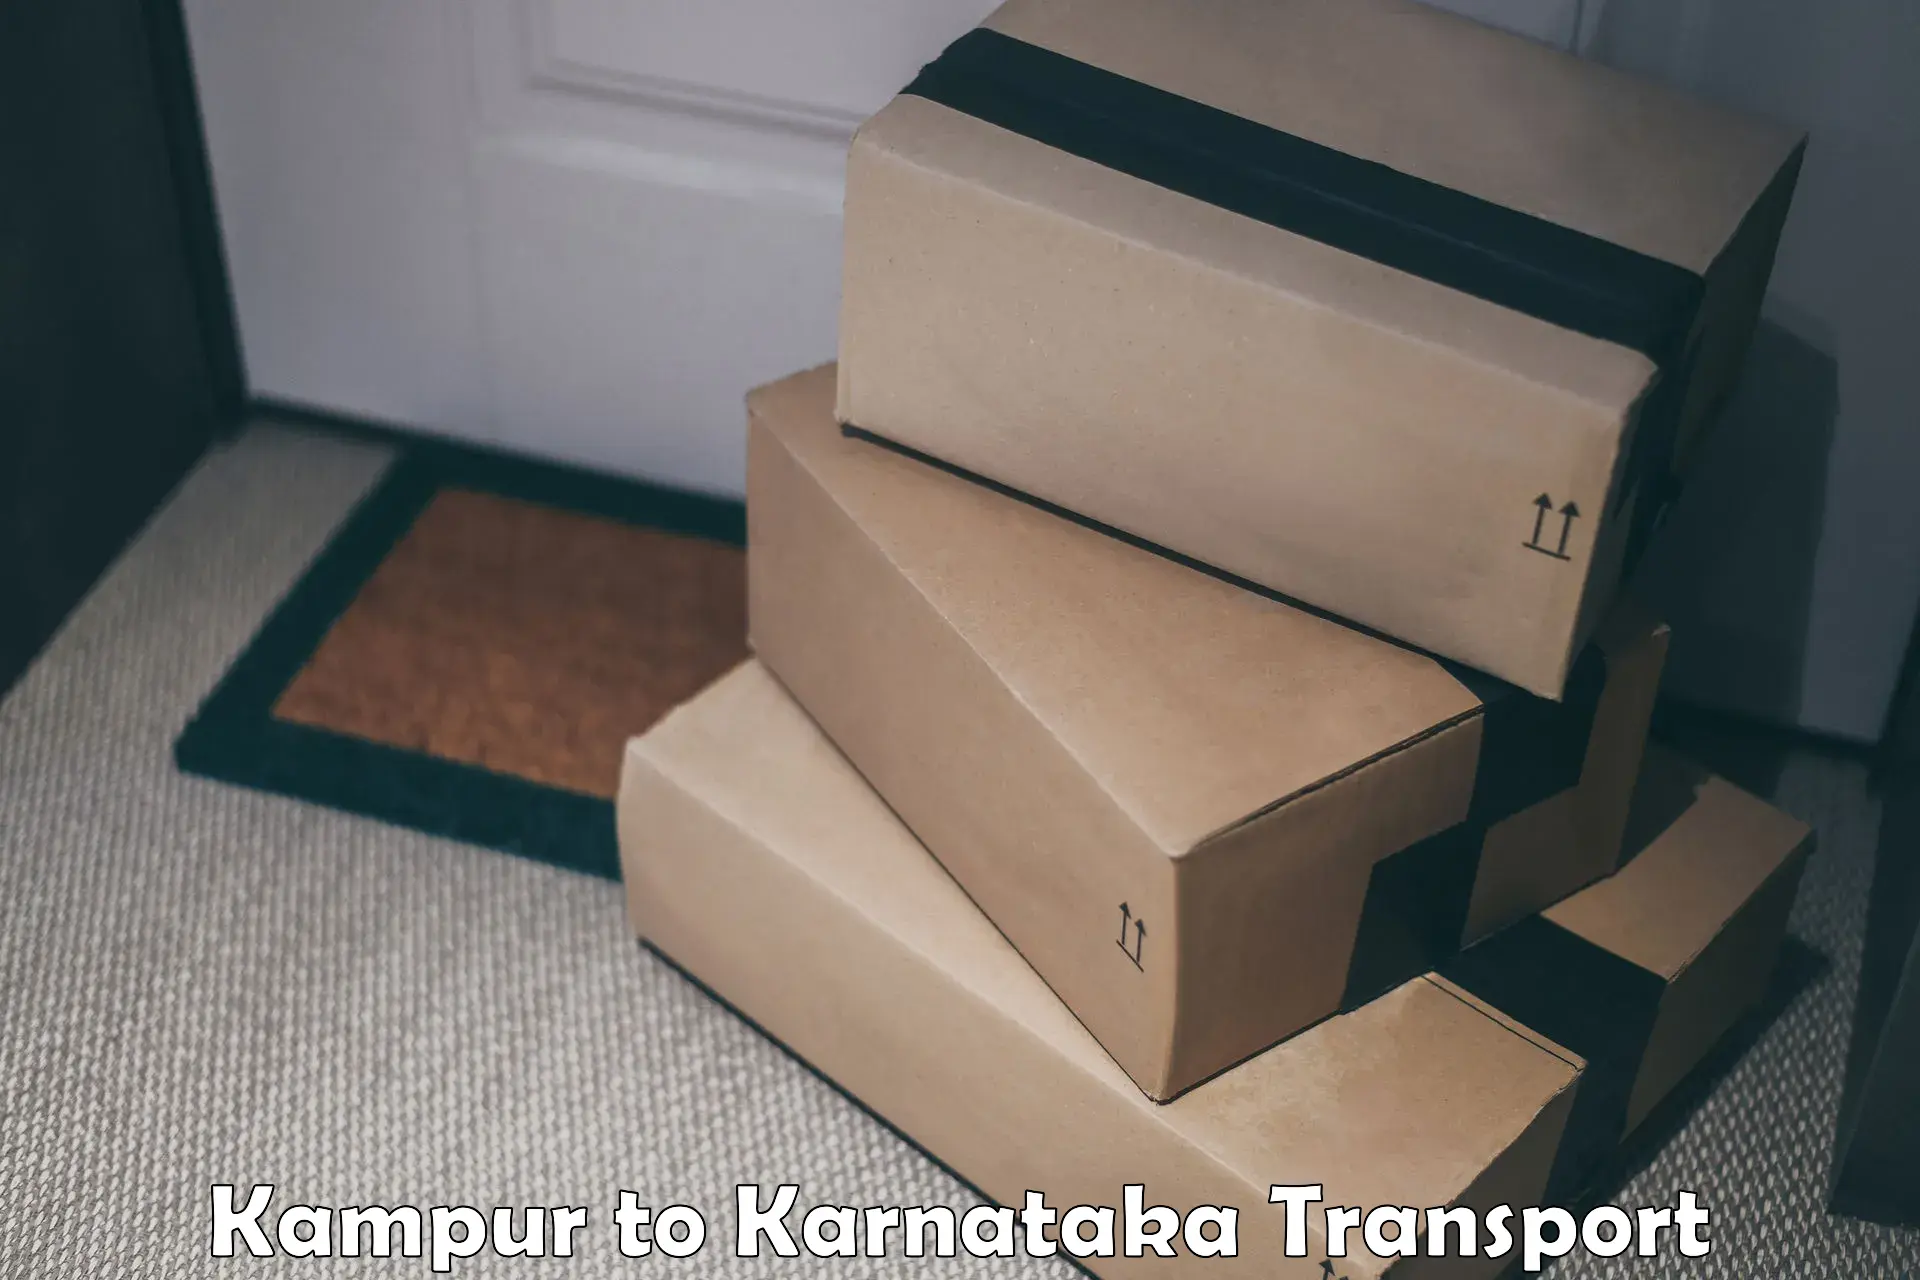 Pick up transport service Kampur to Karnataka